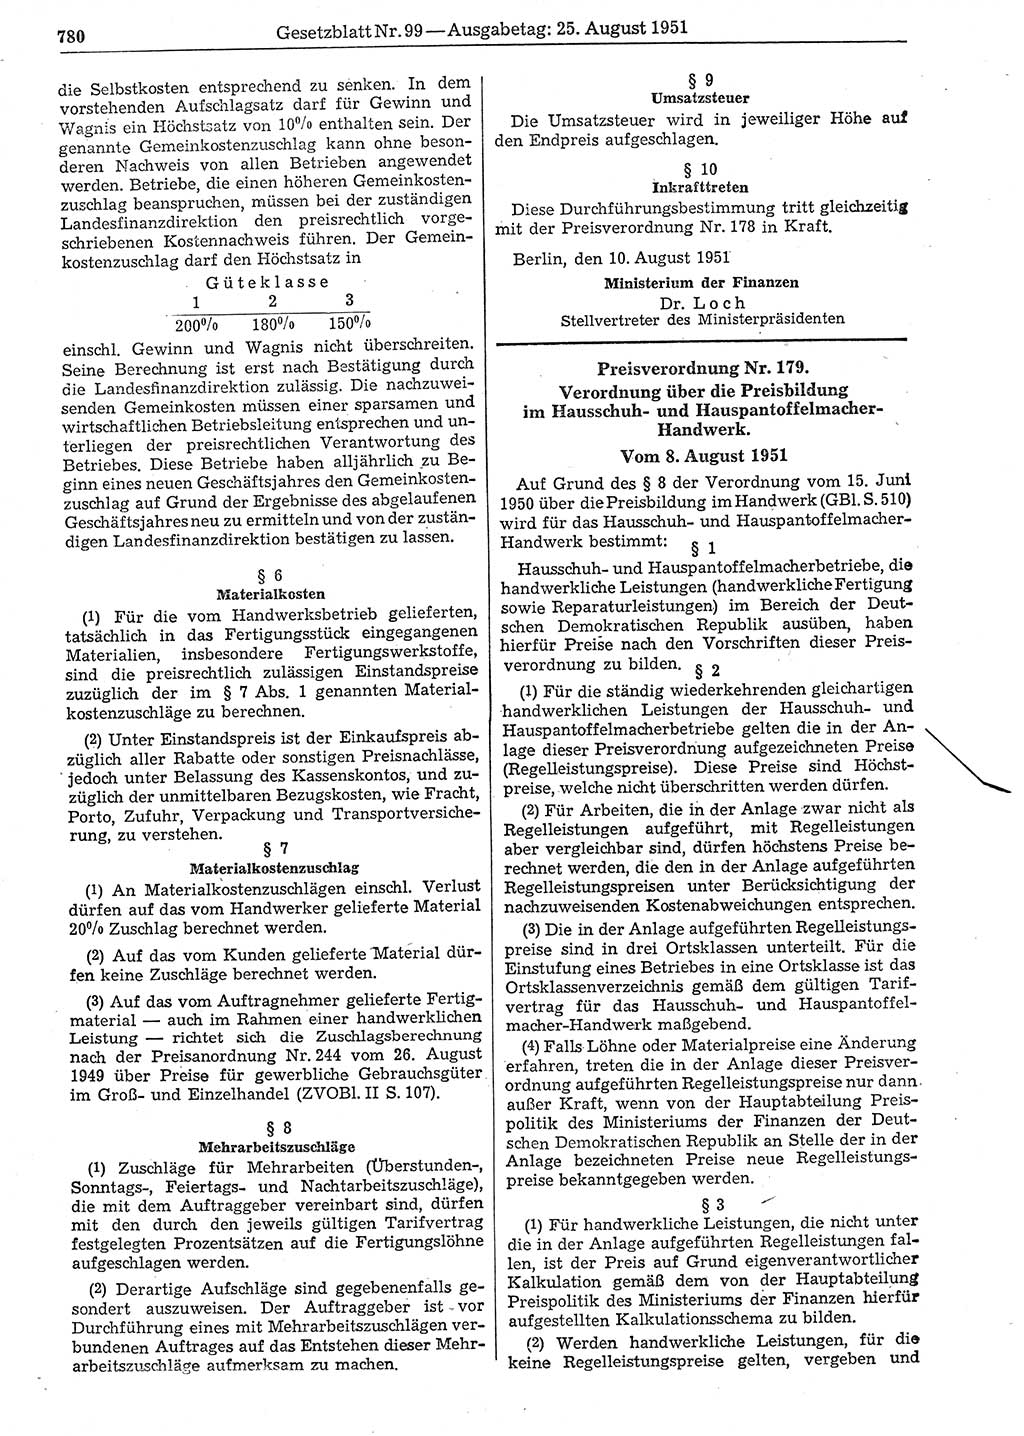 Gesetzblatt (GBl.) der Deutschen Demokratischen Republik (DDR) 1951, Seite 780 (GBl. DDR 1951, S. 780)